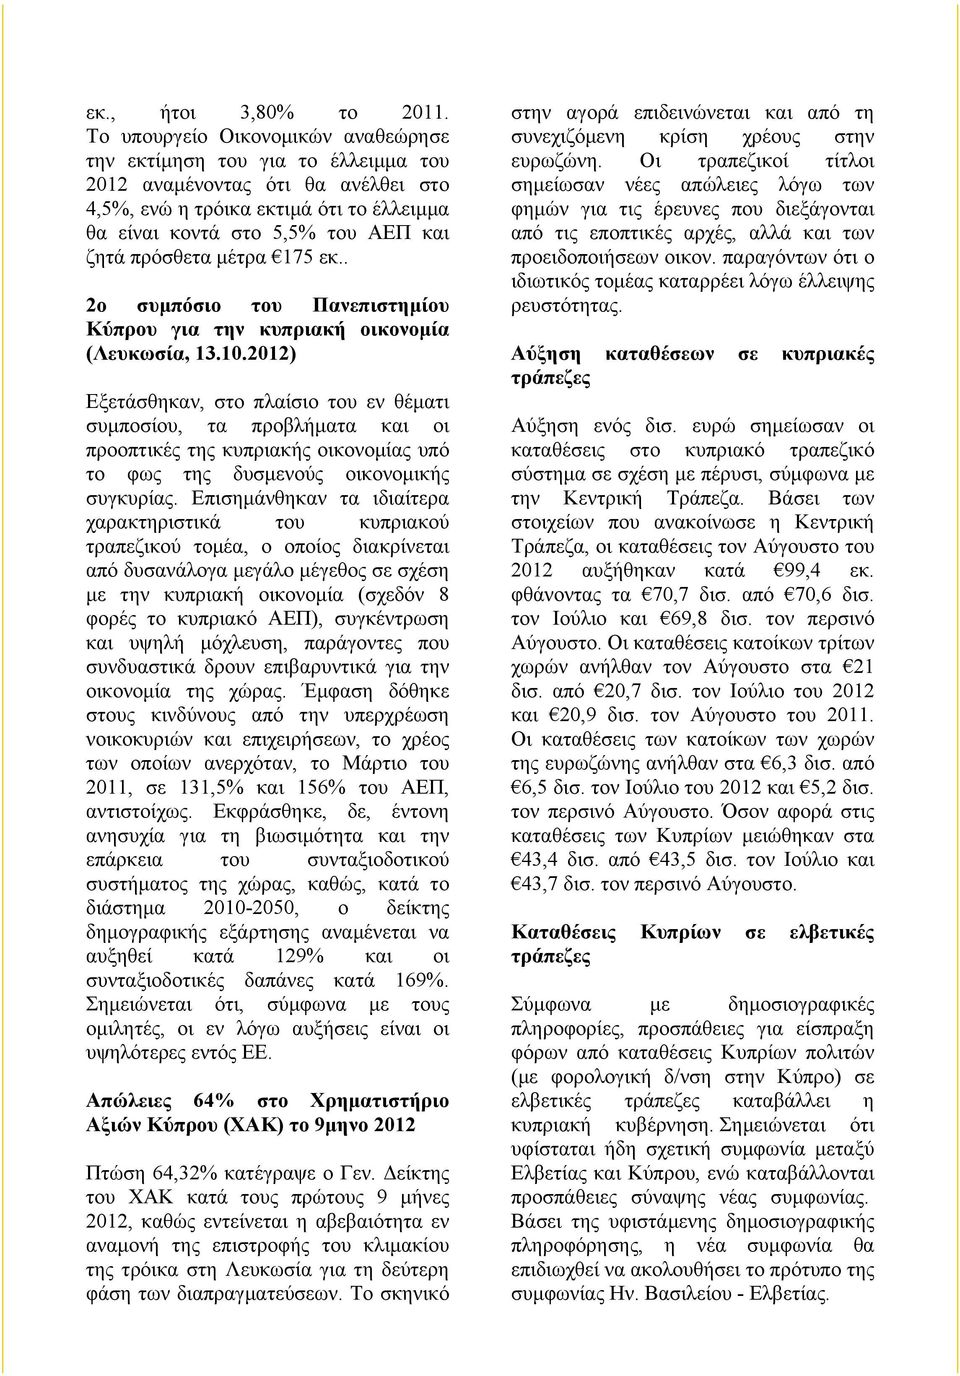 πρόσθετα µέτρα 175 εκ.. 2ο συµπόσιο του Πανεπιστηµίου Κύπρου για την κυπριακή οικονοµία (Λευκωσία, 13.10.